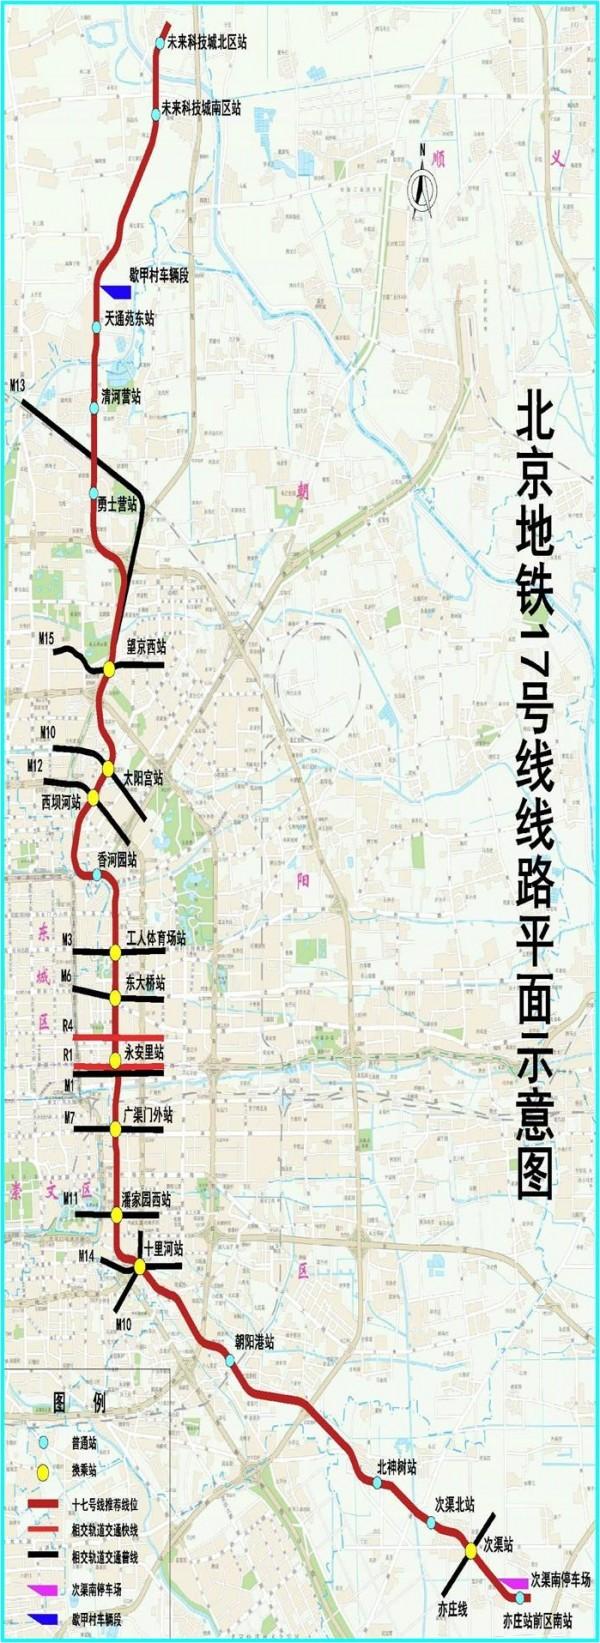 北京地铁17号线预计2020年部分开通 19站已施